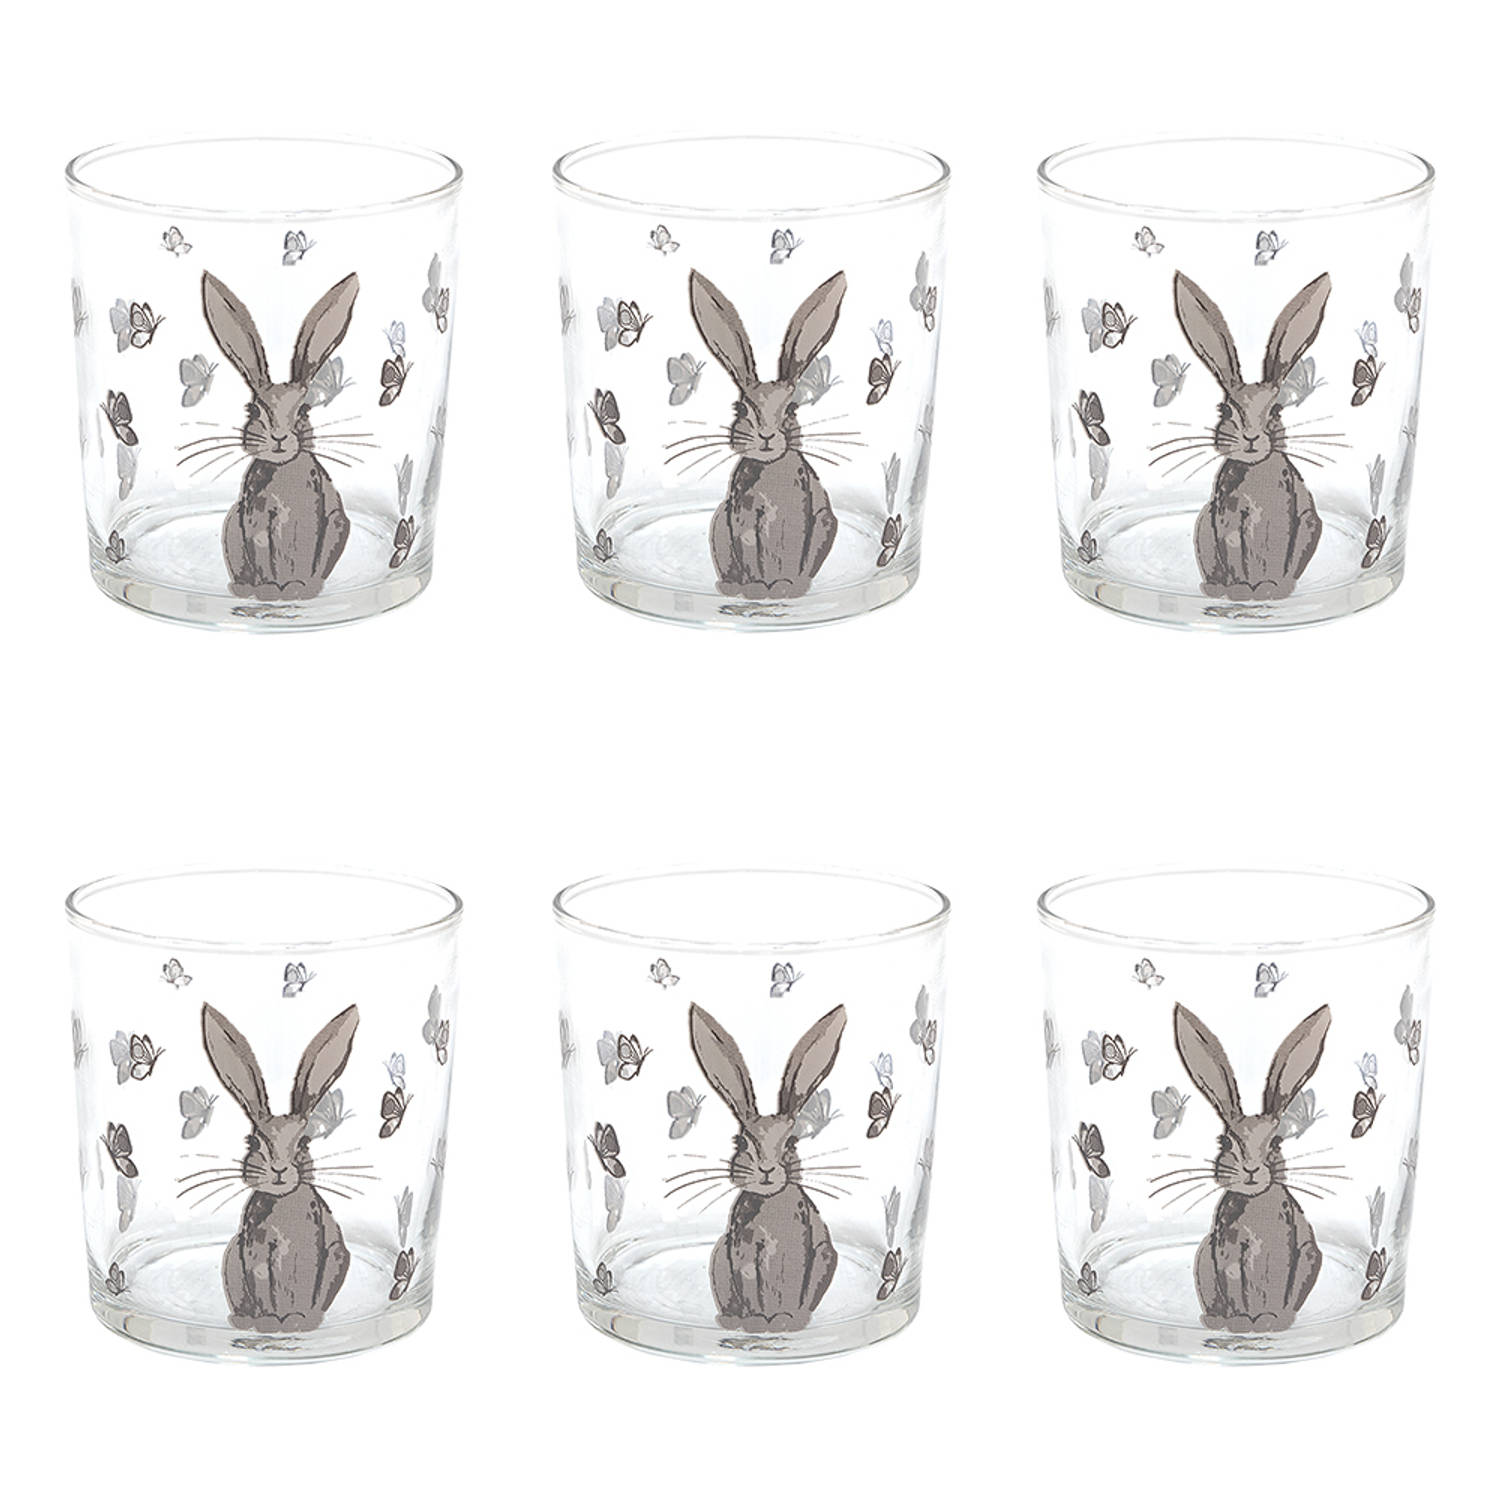 HAES DECO - Set van 6 Waterglazen - formaat Ø 8x9 cm / 250 ml - Kleur Transparant - Bedrukt Glas - Collectie: Rustic Easter Bunny - Waterglas, Drinkglas